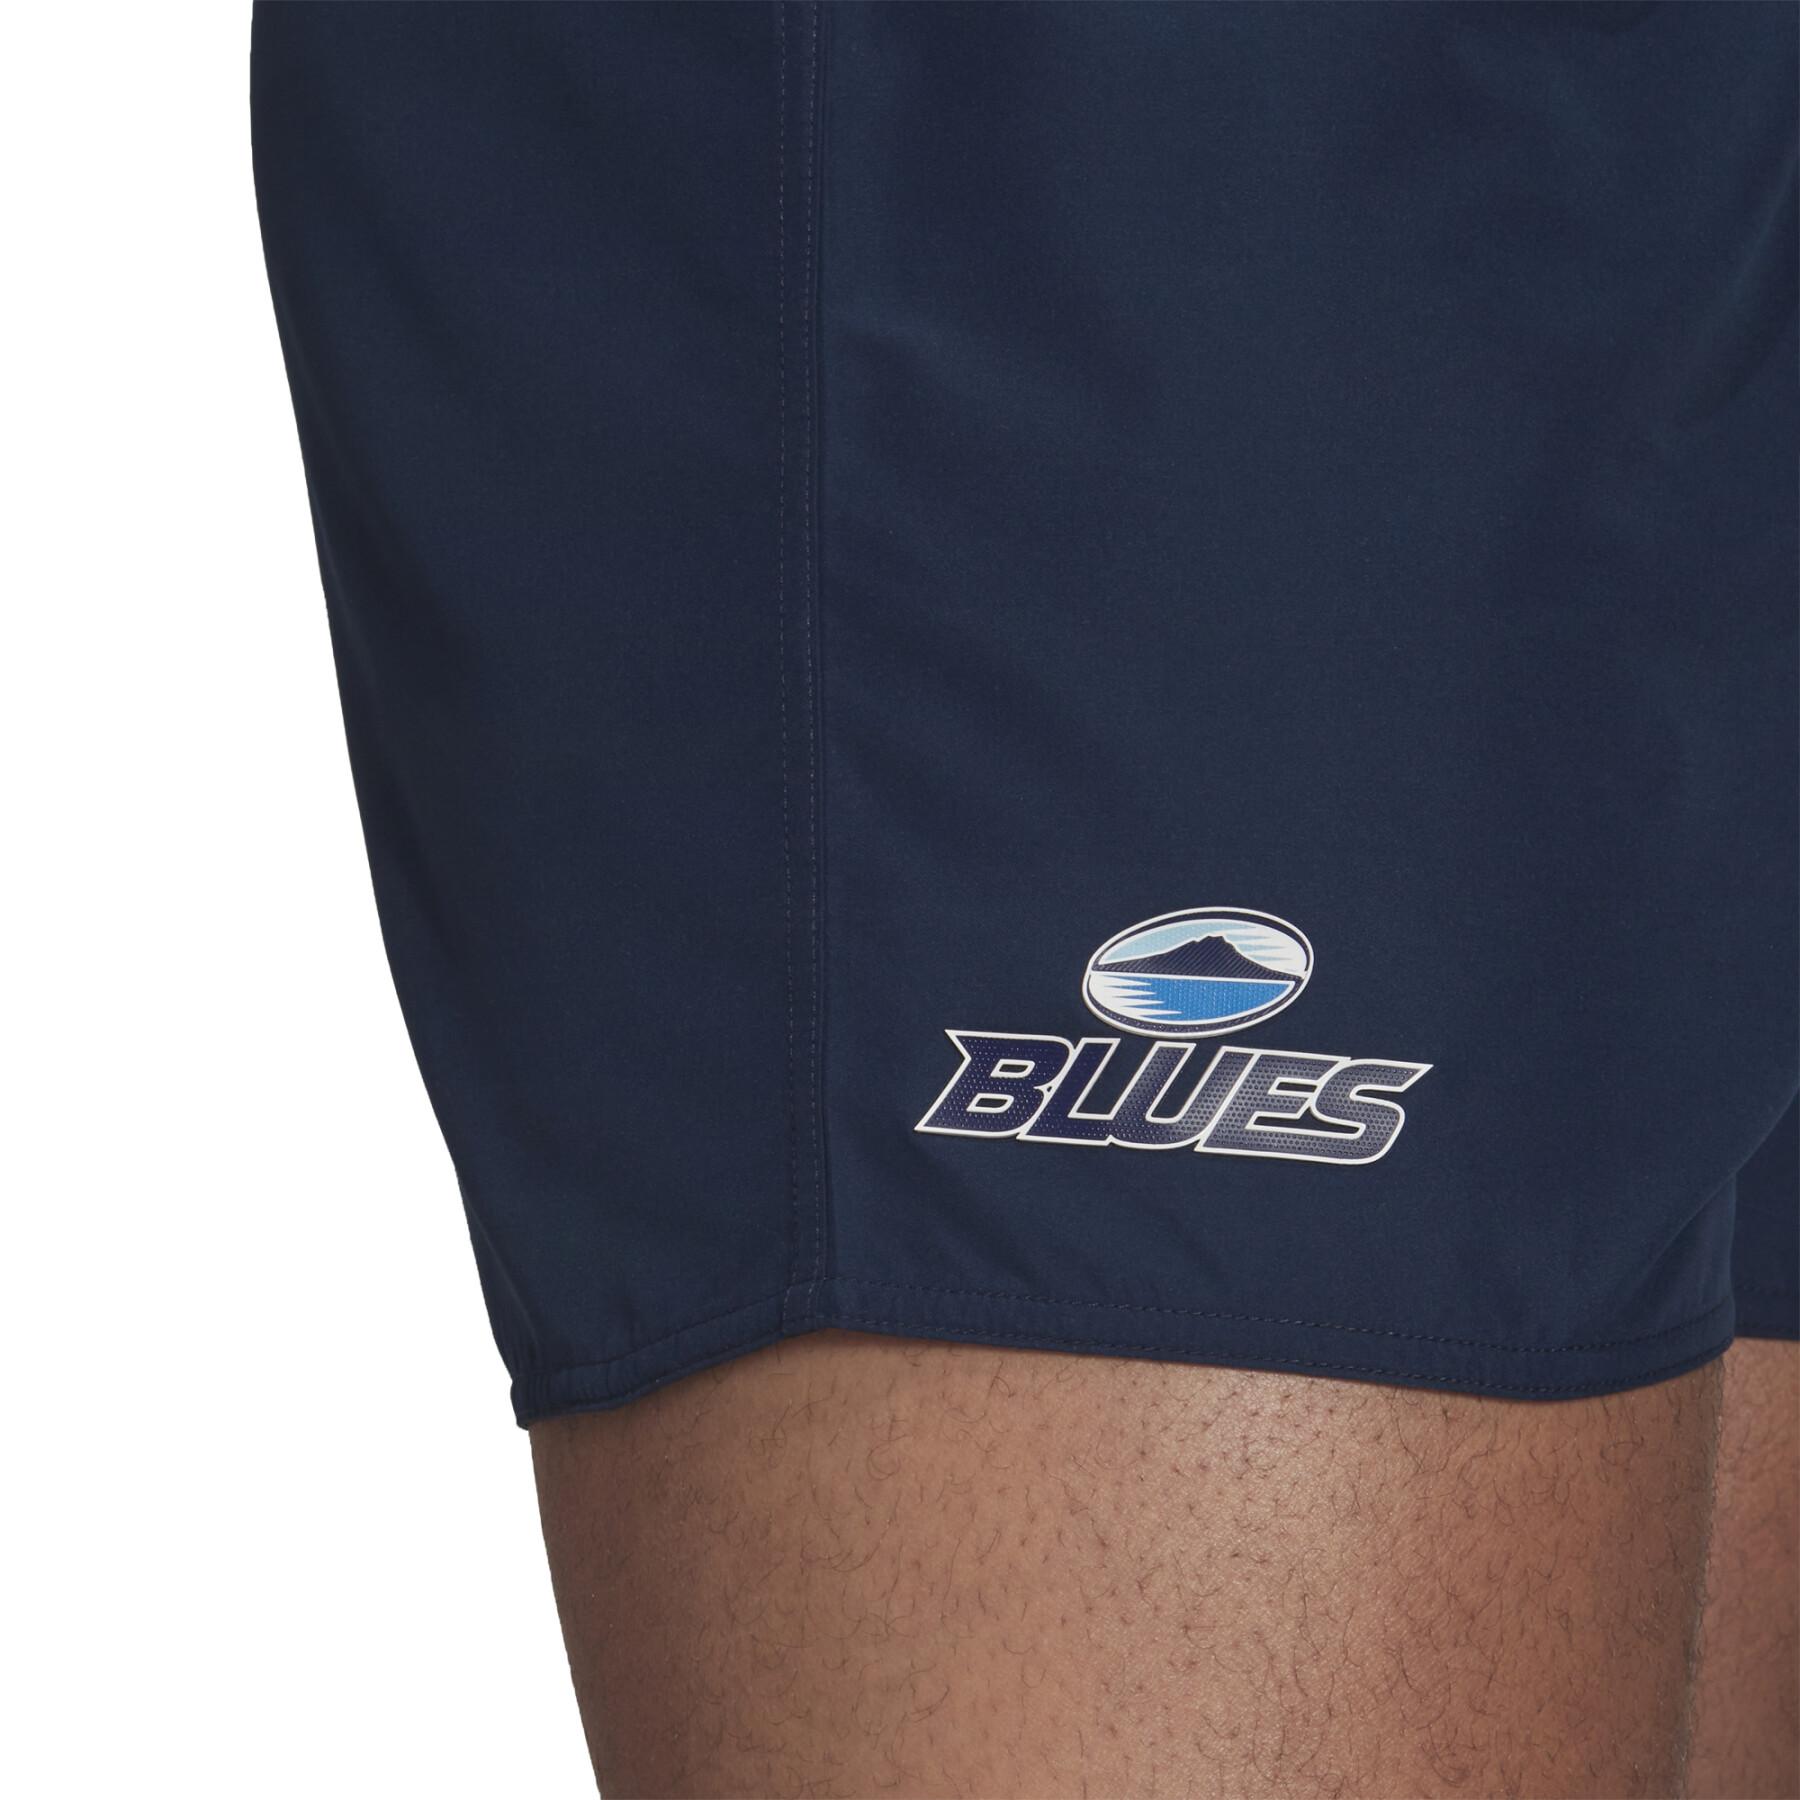 Pantalones cortos para el hogar Blues Supporters 2021/22